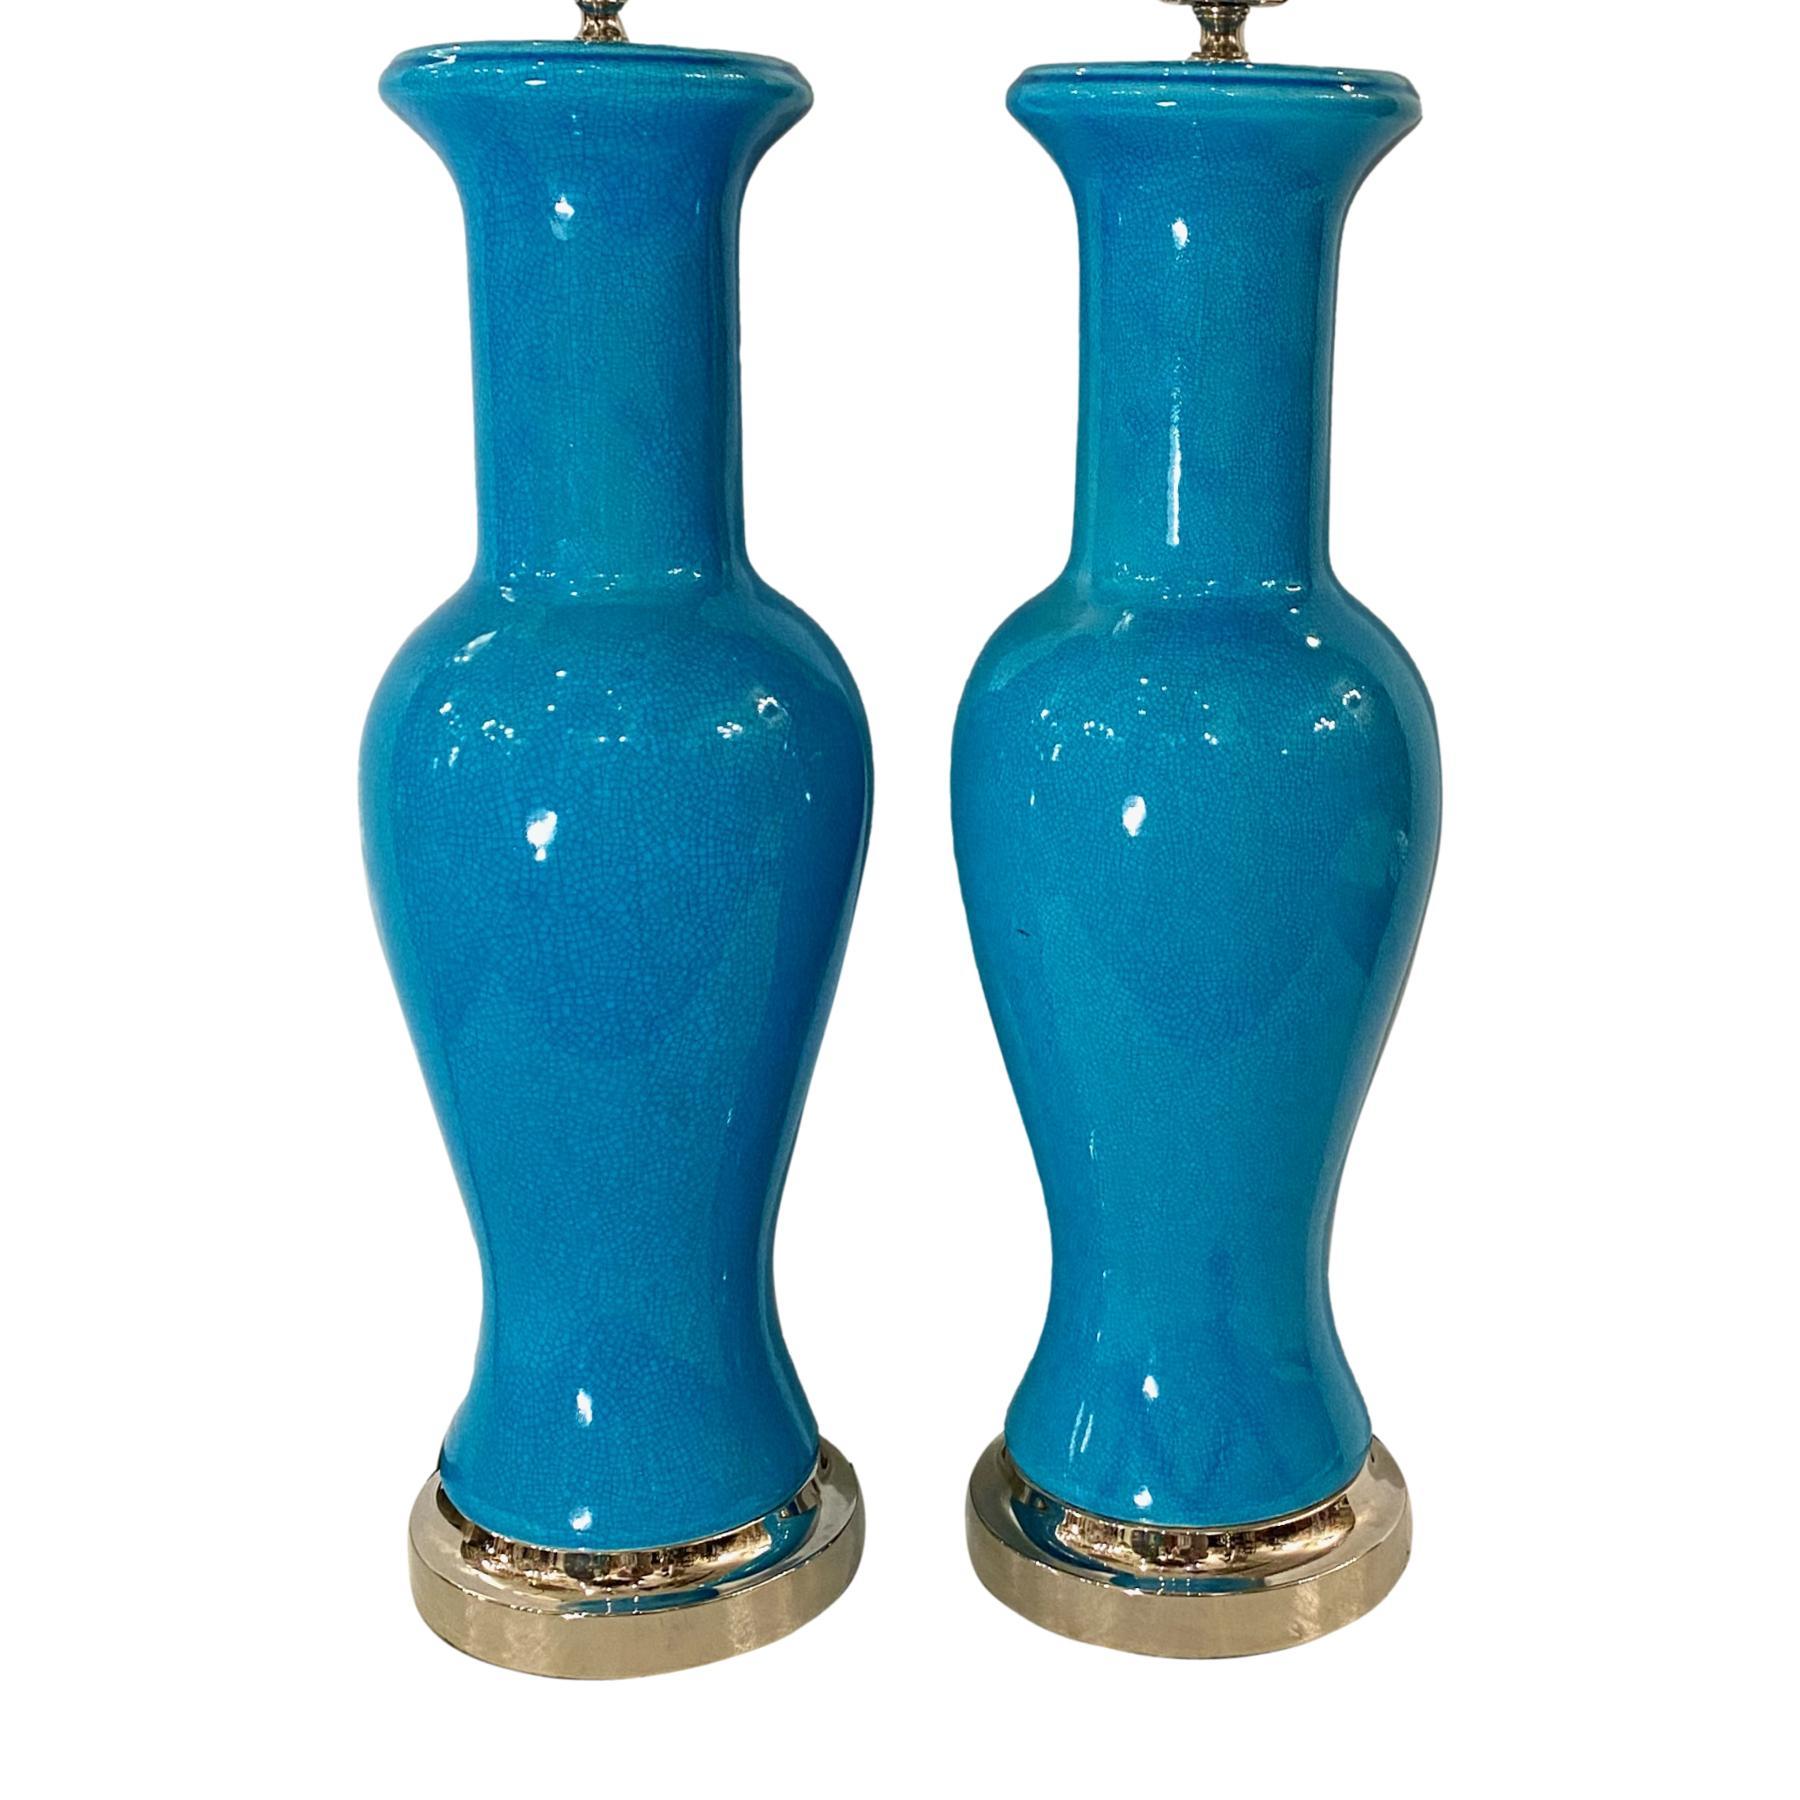 Ein Paar französischer vasenförmiger Tischlampen aus türkisblauem Craquelé-Porzellan mit vernickeltem Sockel aus der Zeit um 1940.

Messungen
Höhe des Körpers: 2o